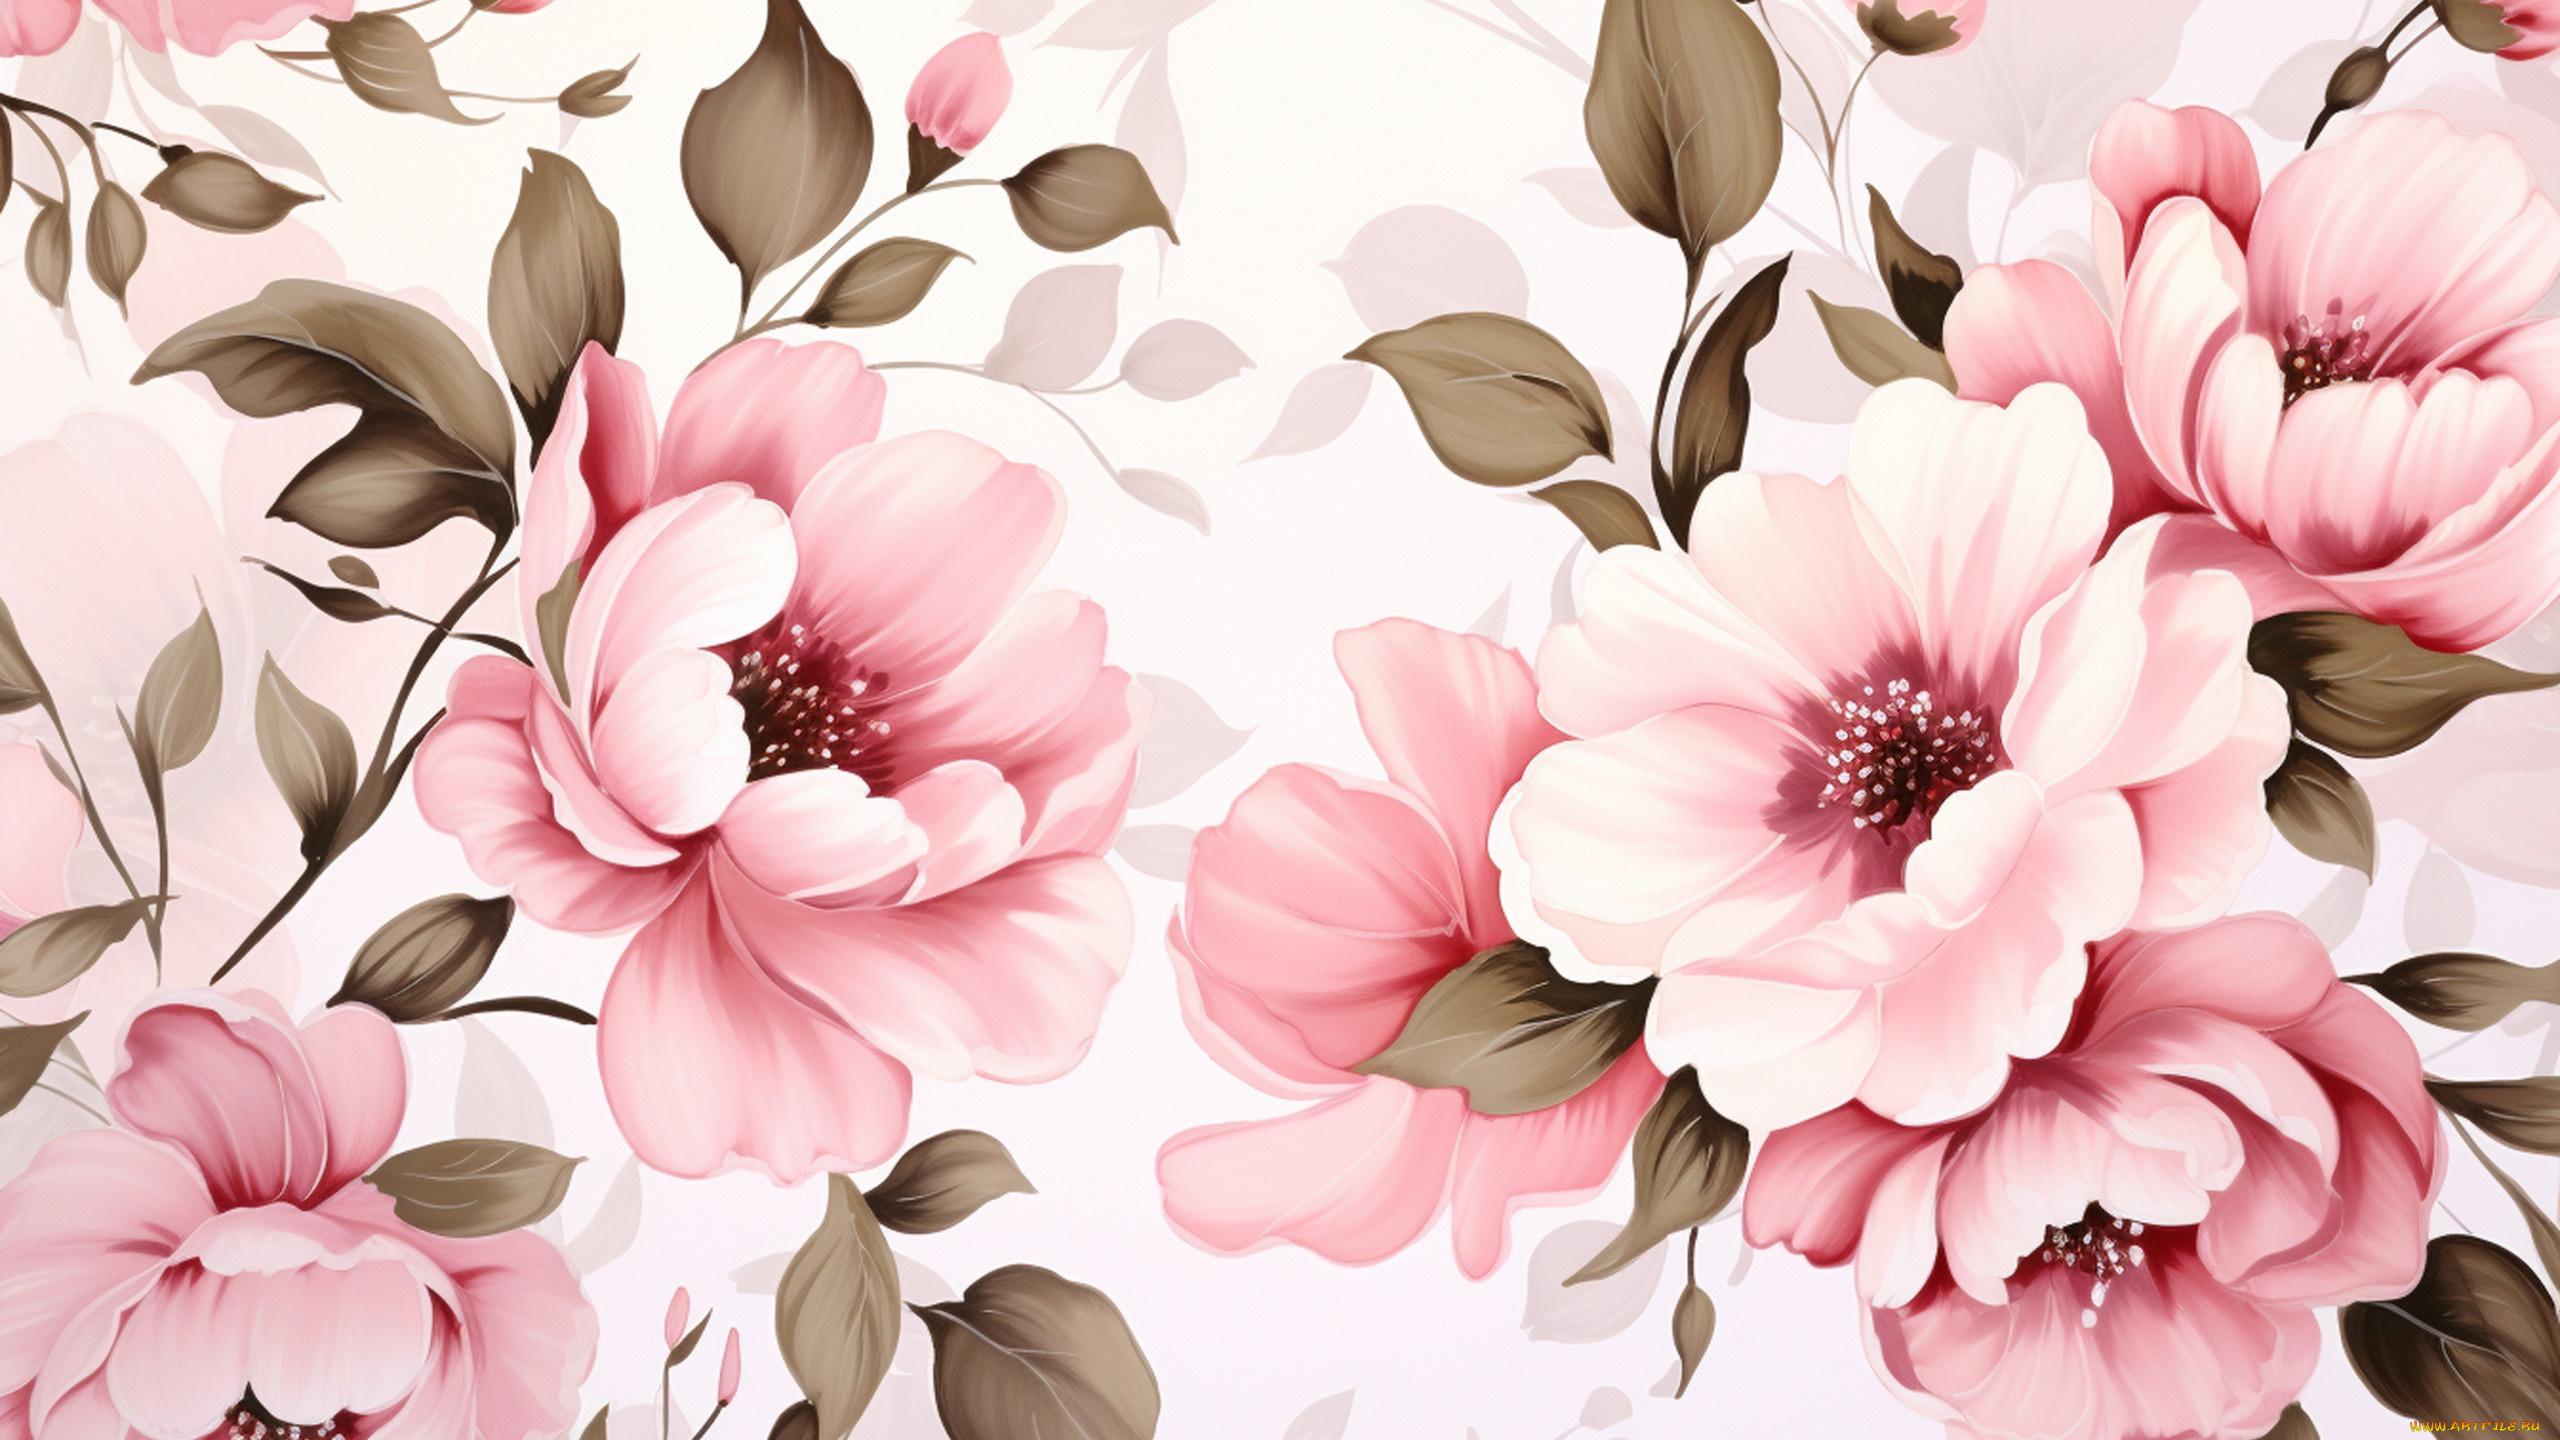 рисованное, цветы, листья, текстура, весна, белый, фон, розовые, пионы, пион